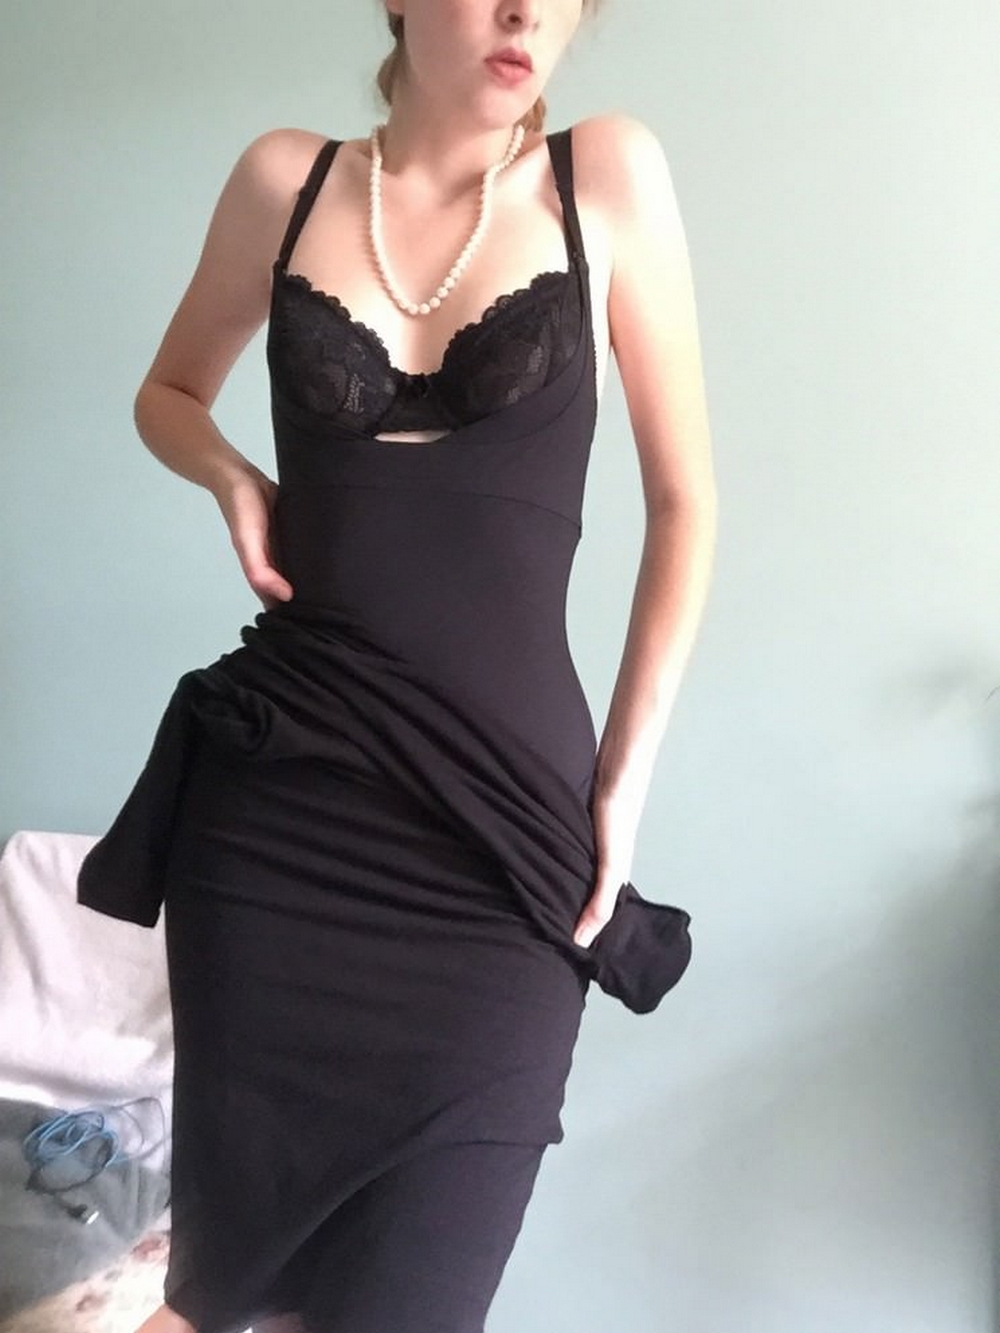 Длинноногая красотка в черном платье светит обнаженным телом 5 фото